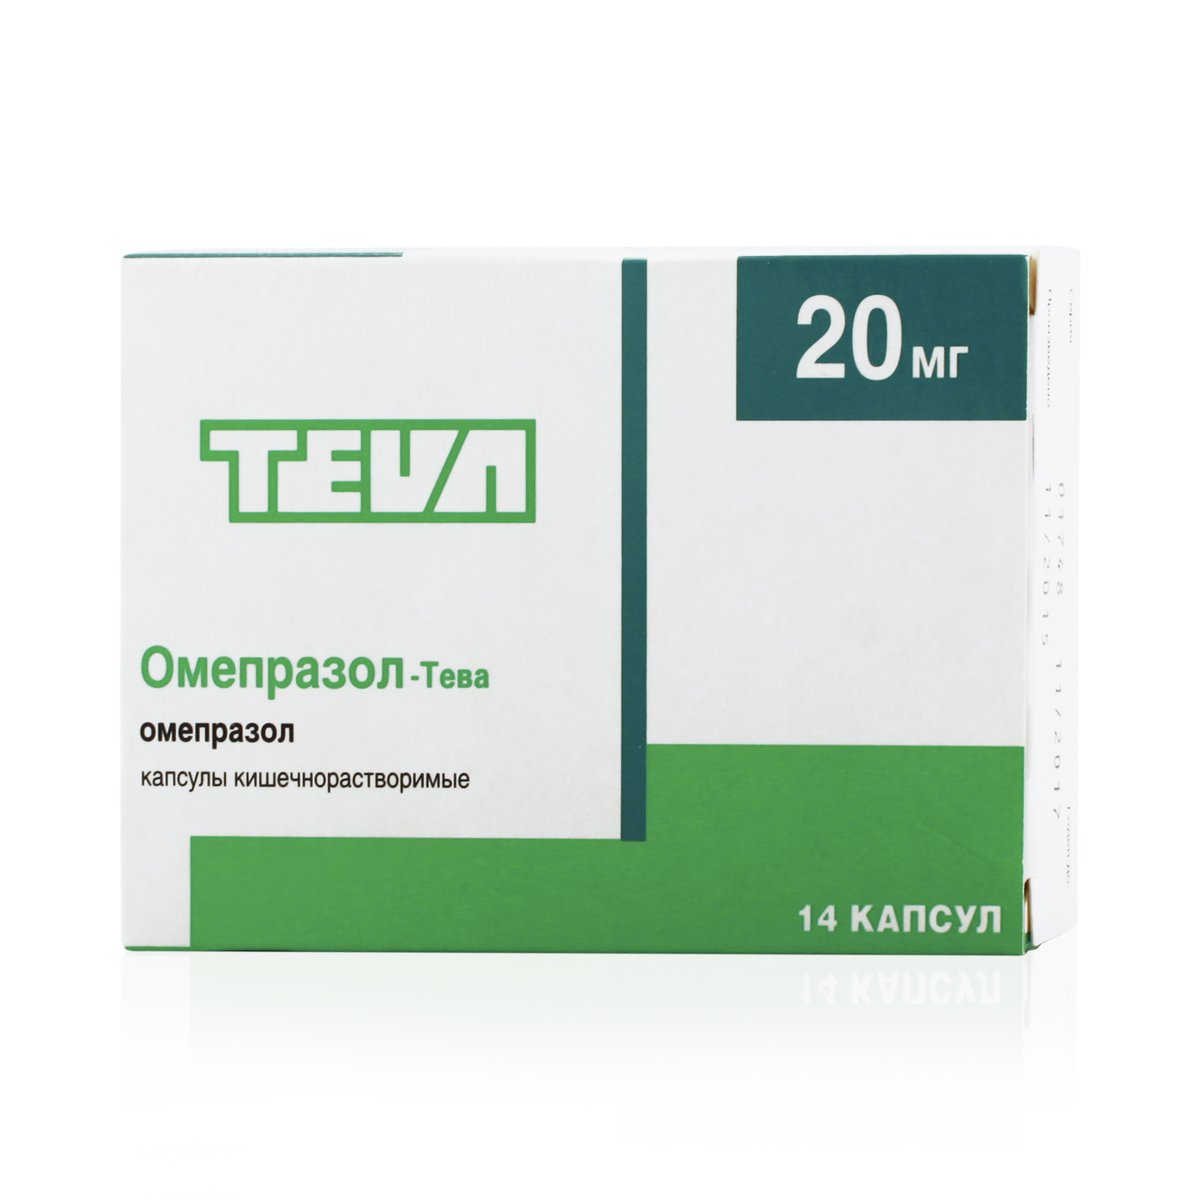 Омепразол-Тева (капсулы, 14 шт, 20 мг) - цена,  онлайн  .